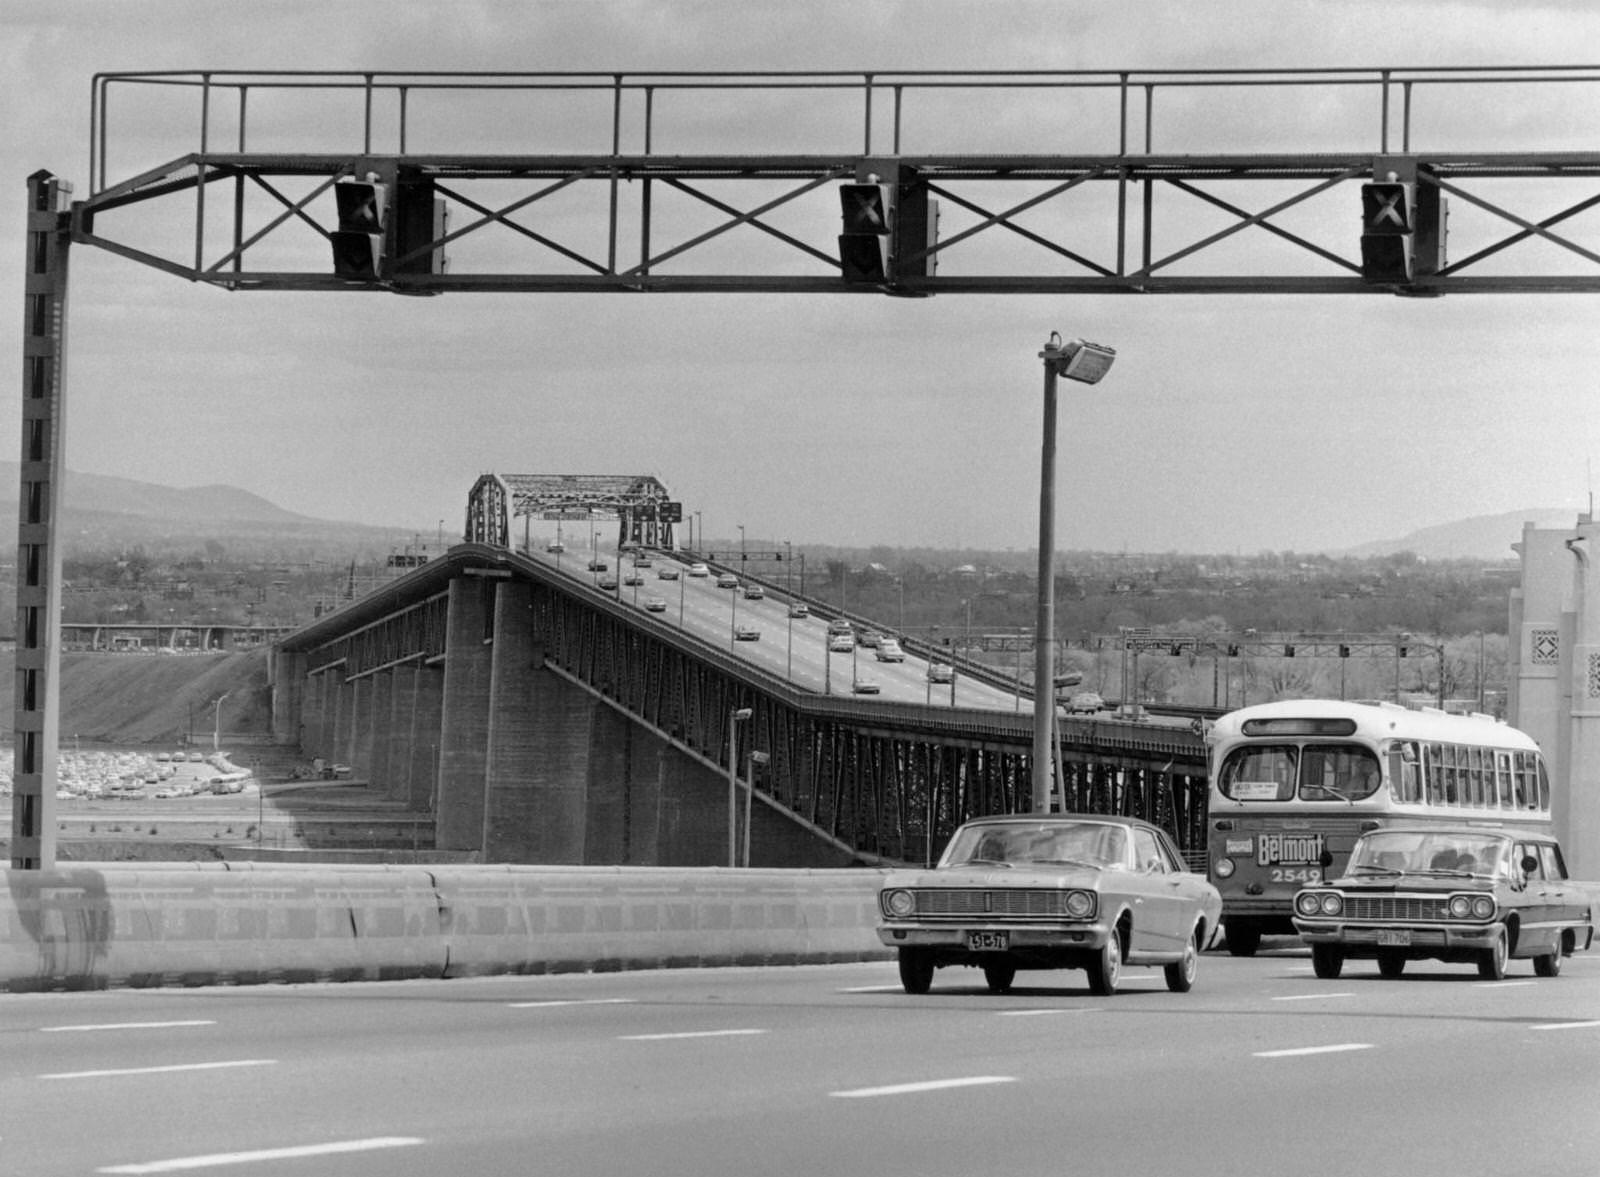 Jacques Cartier Bridge, Montreal, 1960s